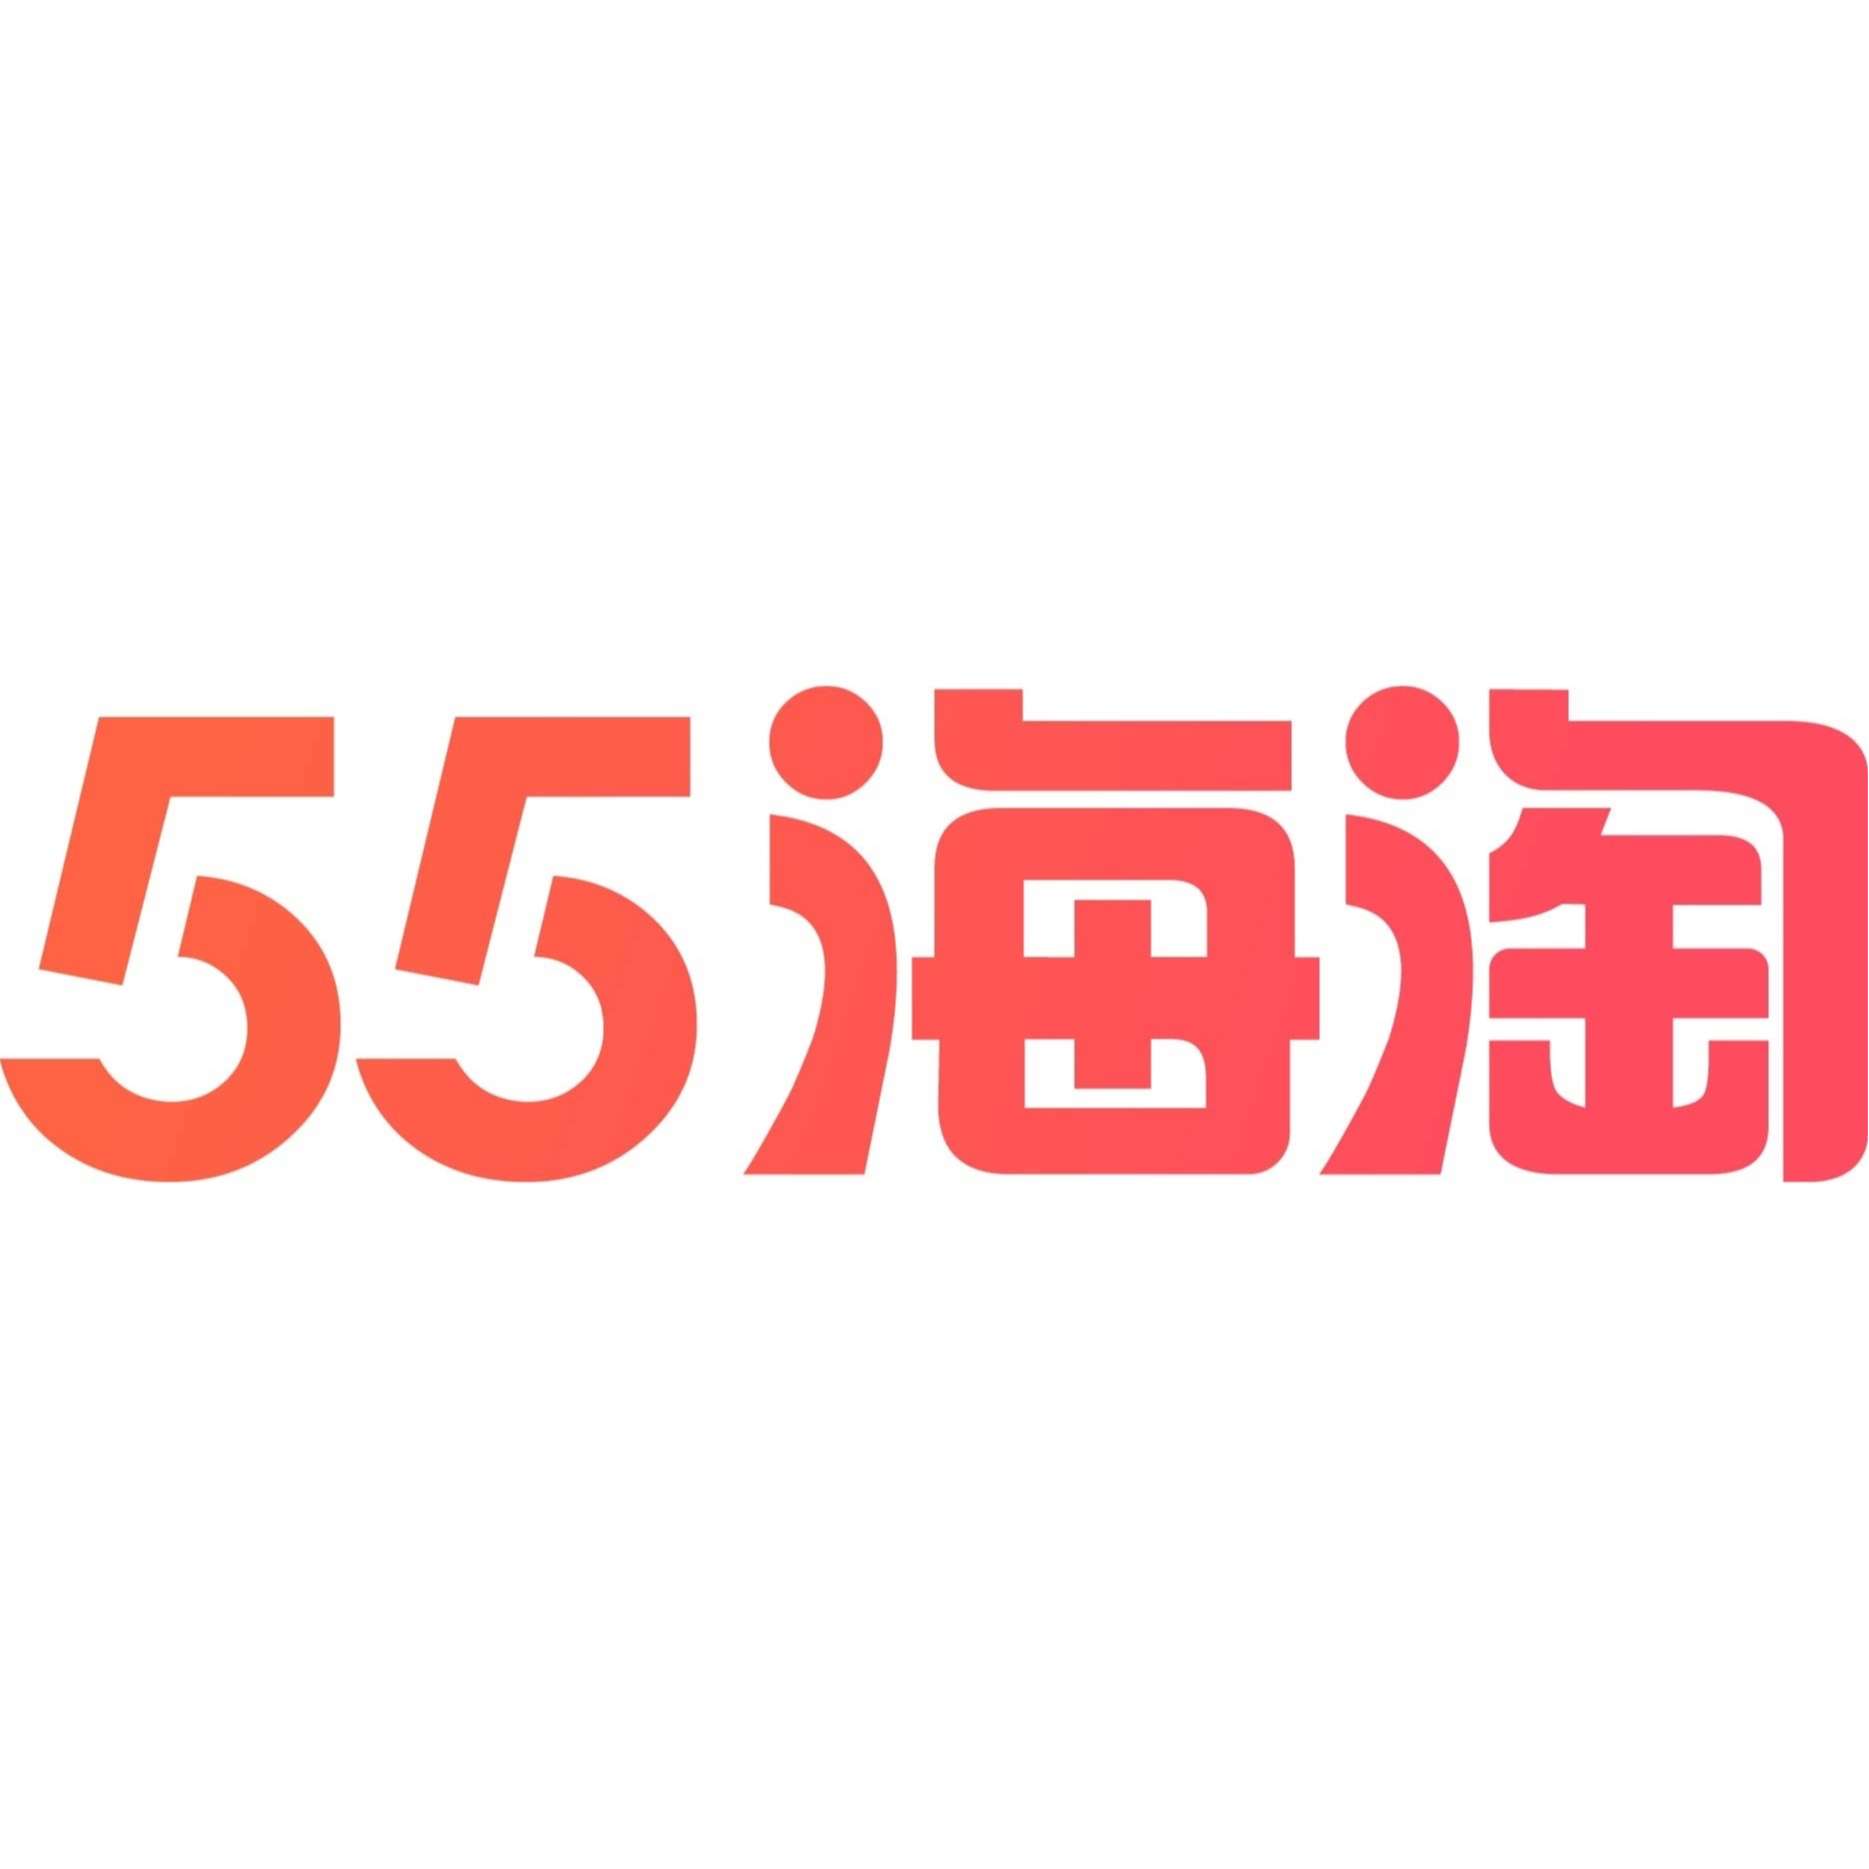 55Haitao logo